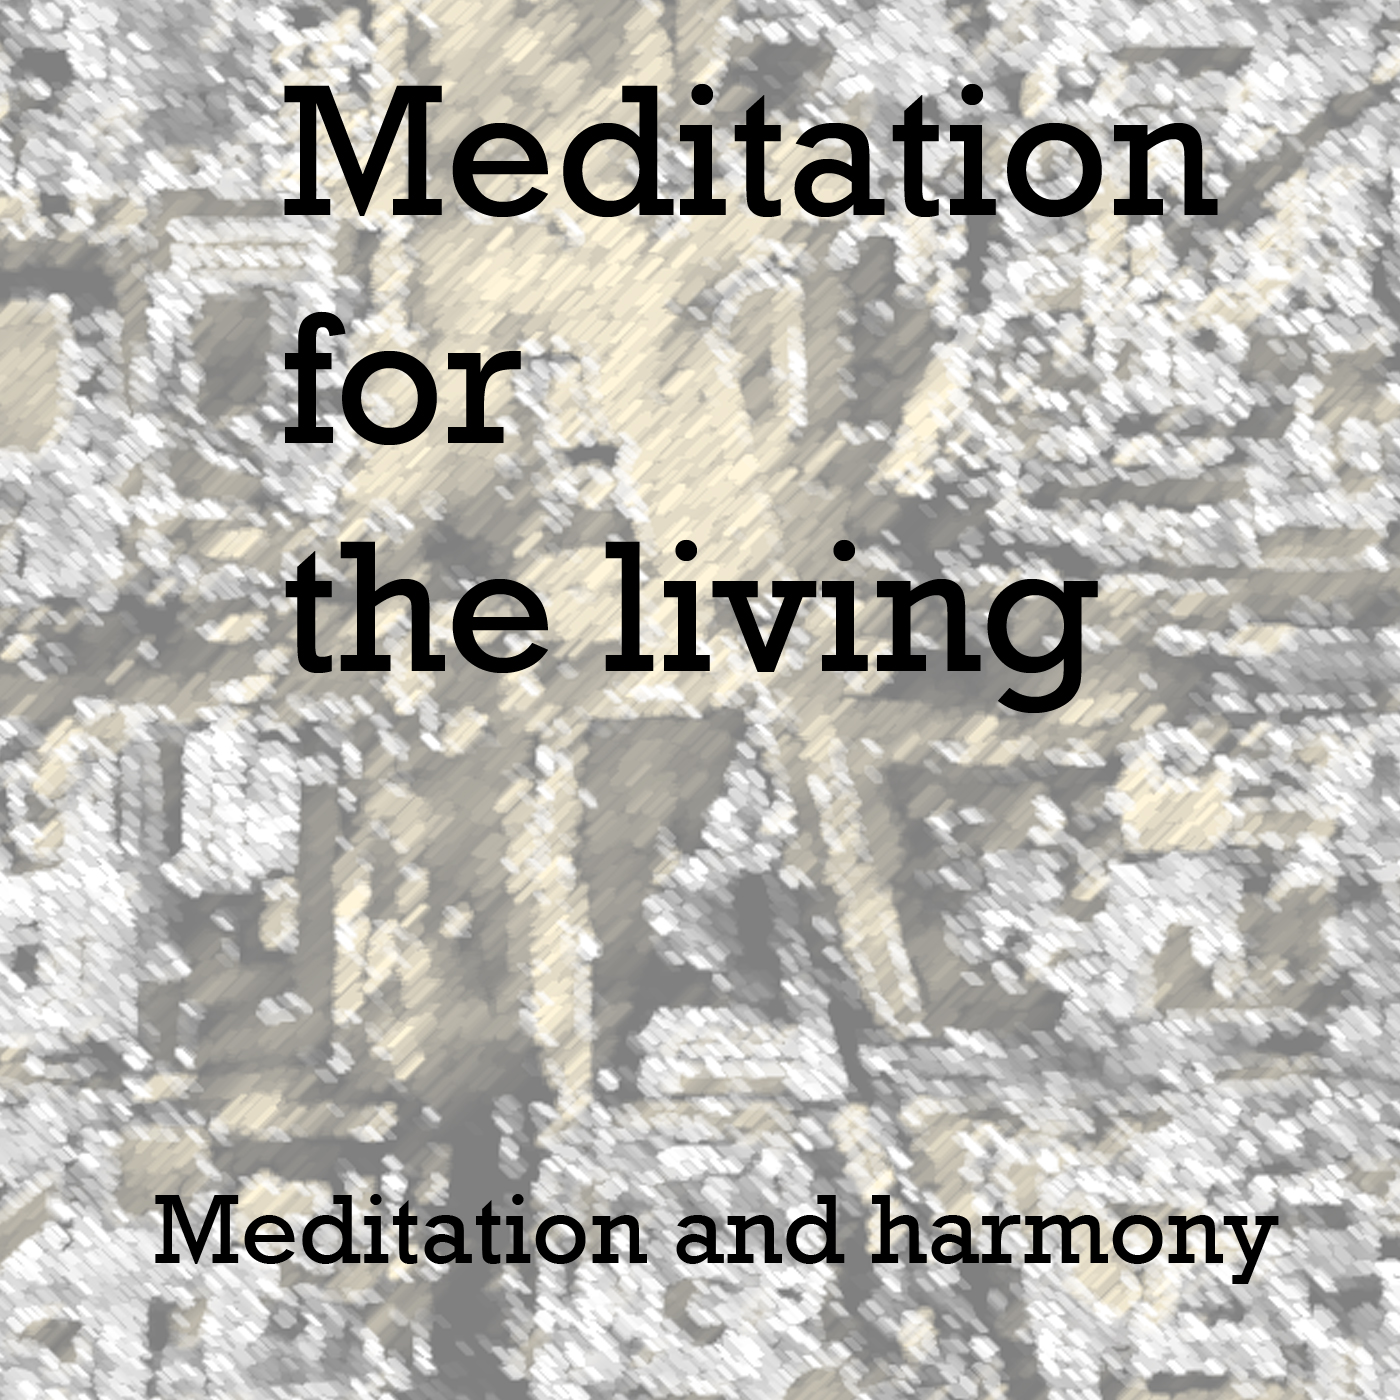 Meditation and harmony